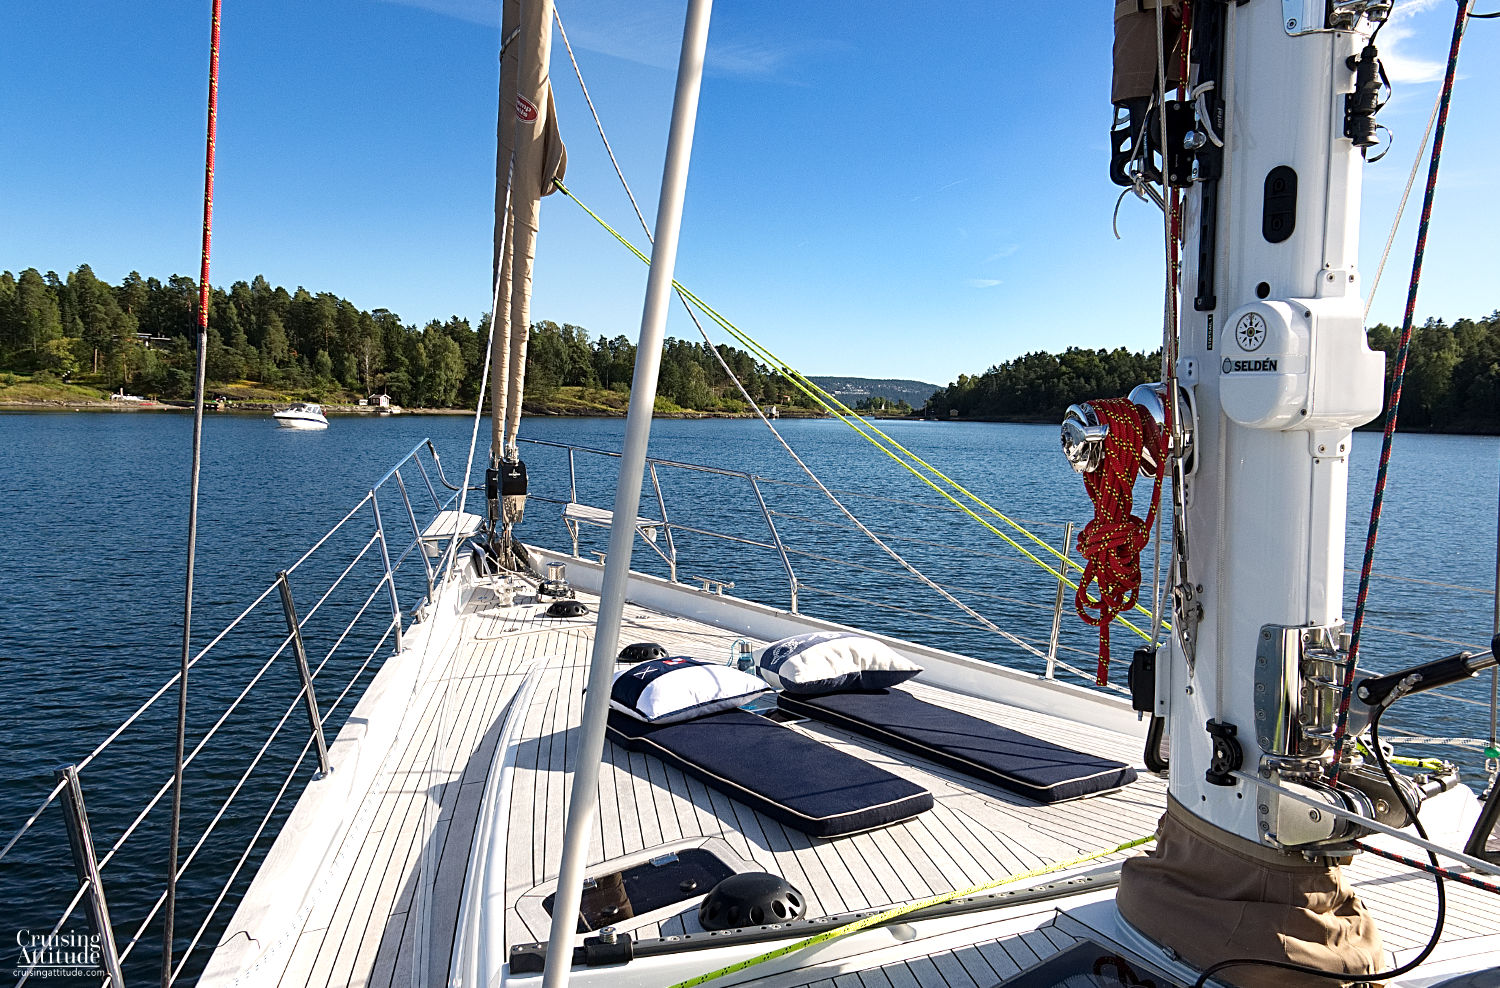 Anchorage near Oslo | Cruising Attitude Sailing Blog | Discovery 55